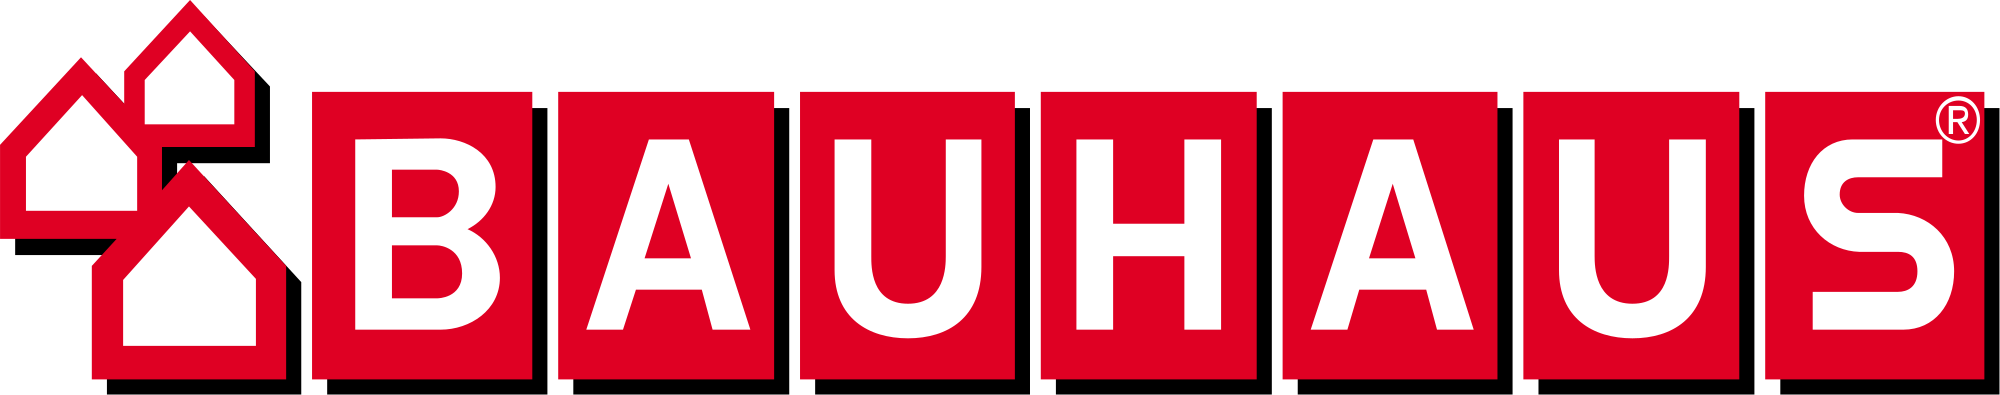 2000px-Bauhaus_logo.svg